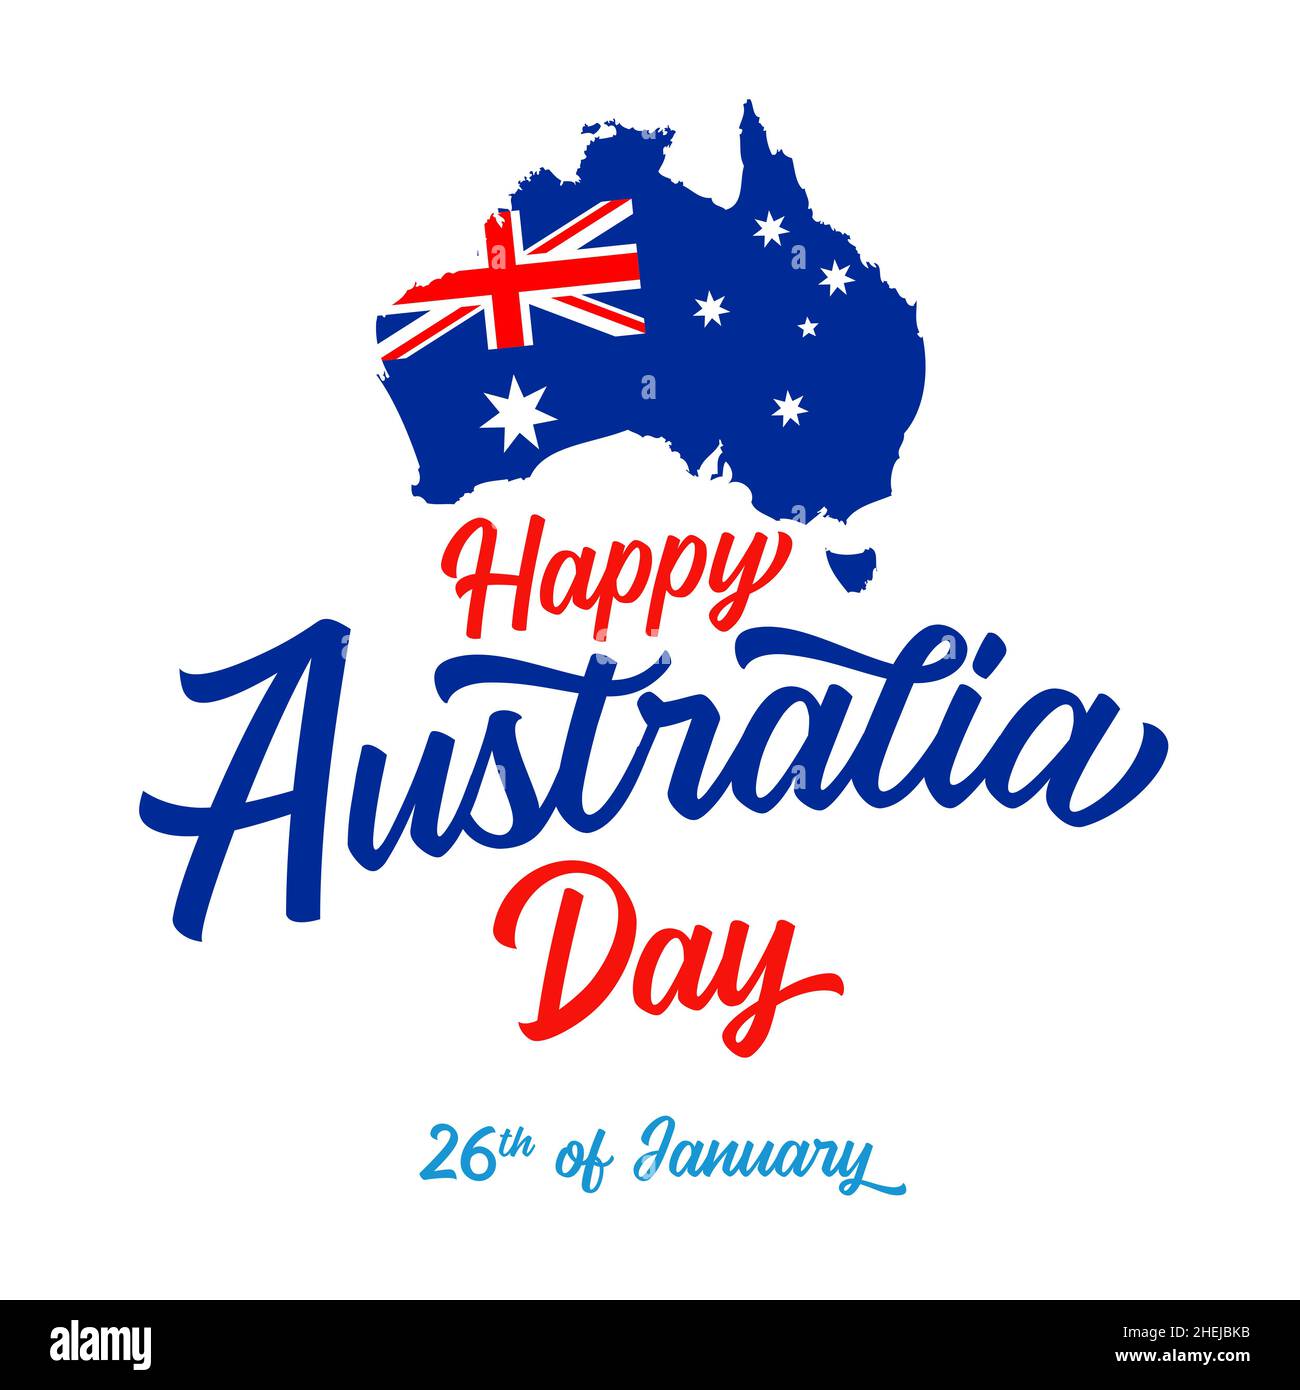 Schriftzug „Happy Australia Day“. Australische Karte mit Flagge und Text. Vektorgrafik. Isolierte abstrakte Grafik-Design-Vorlage Stock Vektor